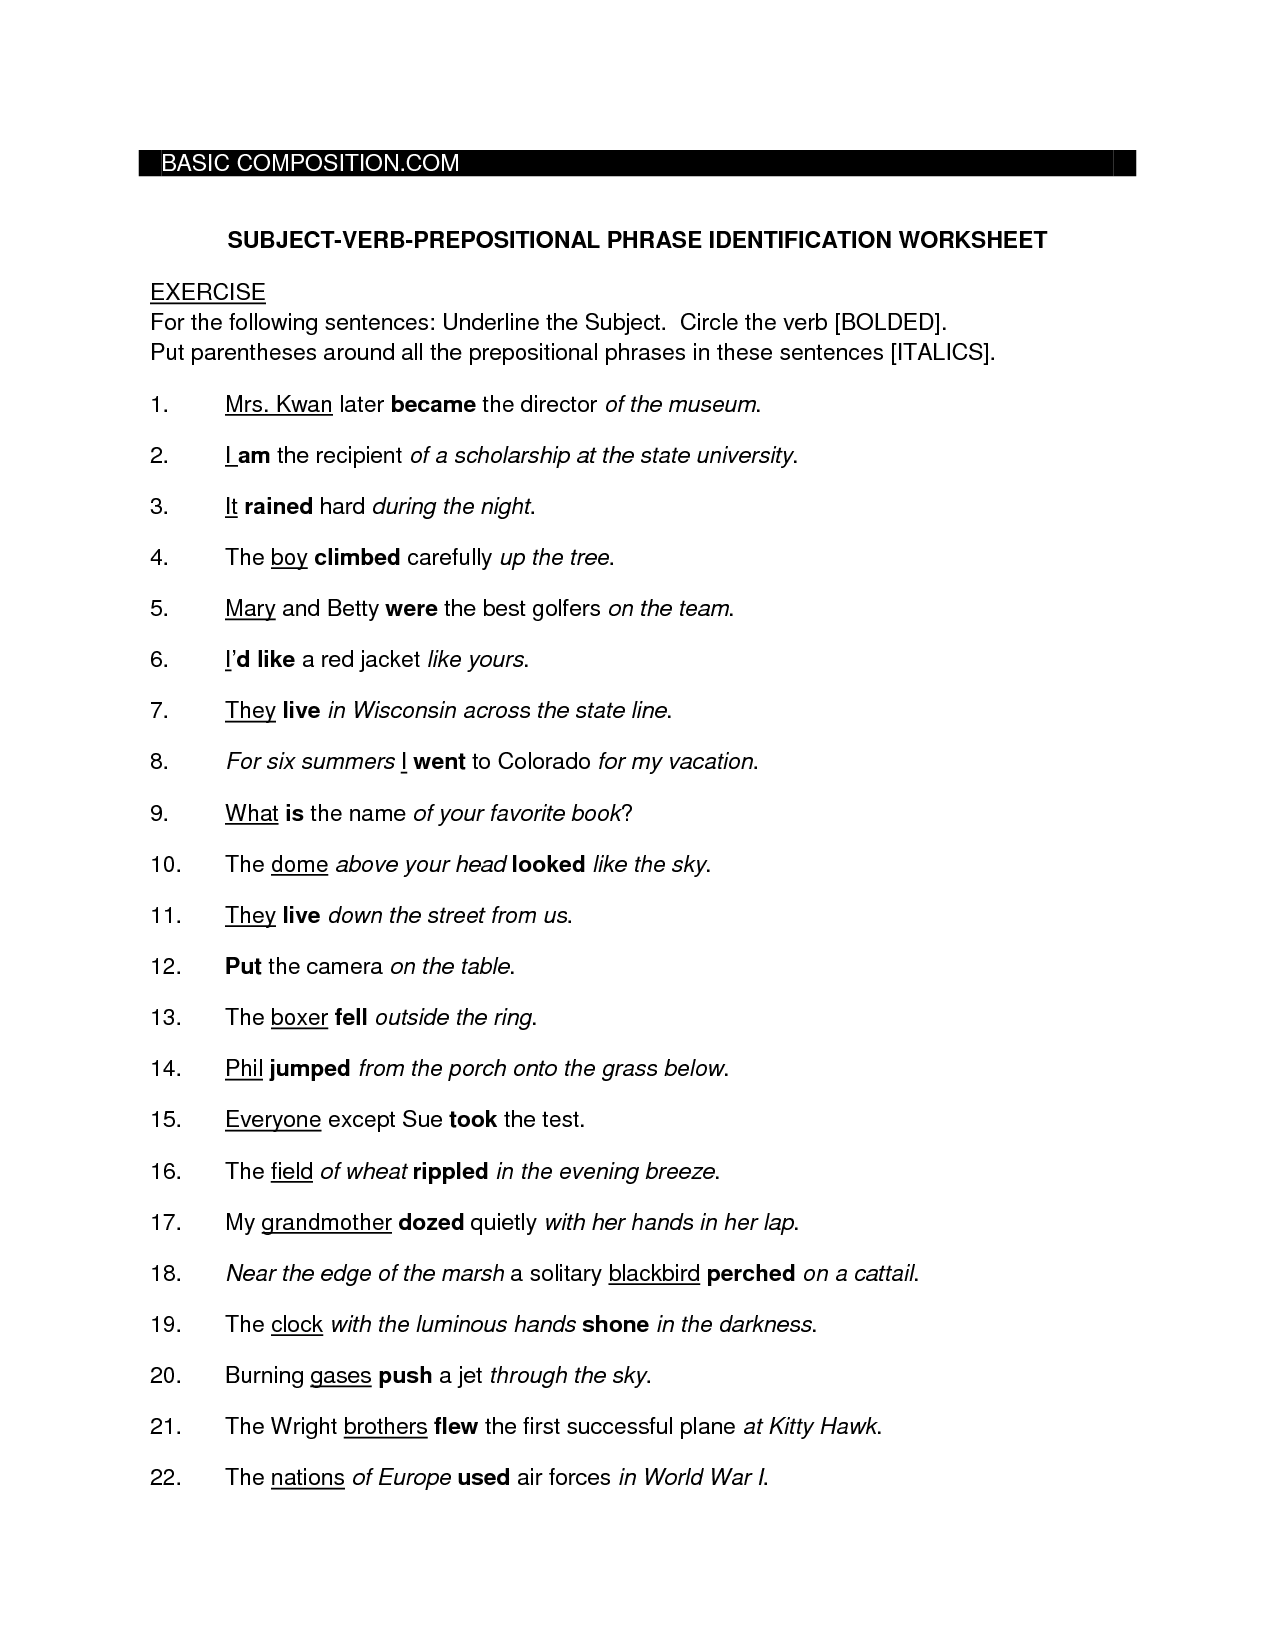 Phrasal Prepositional Verbs Worksheet